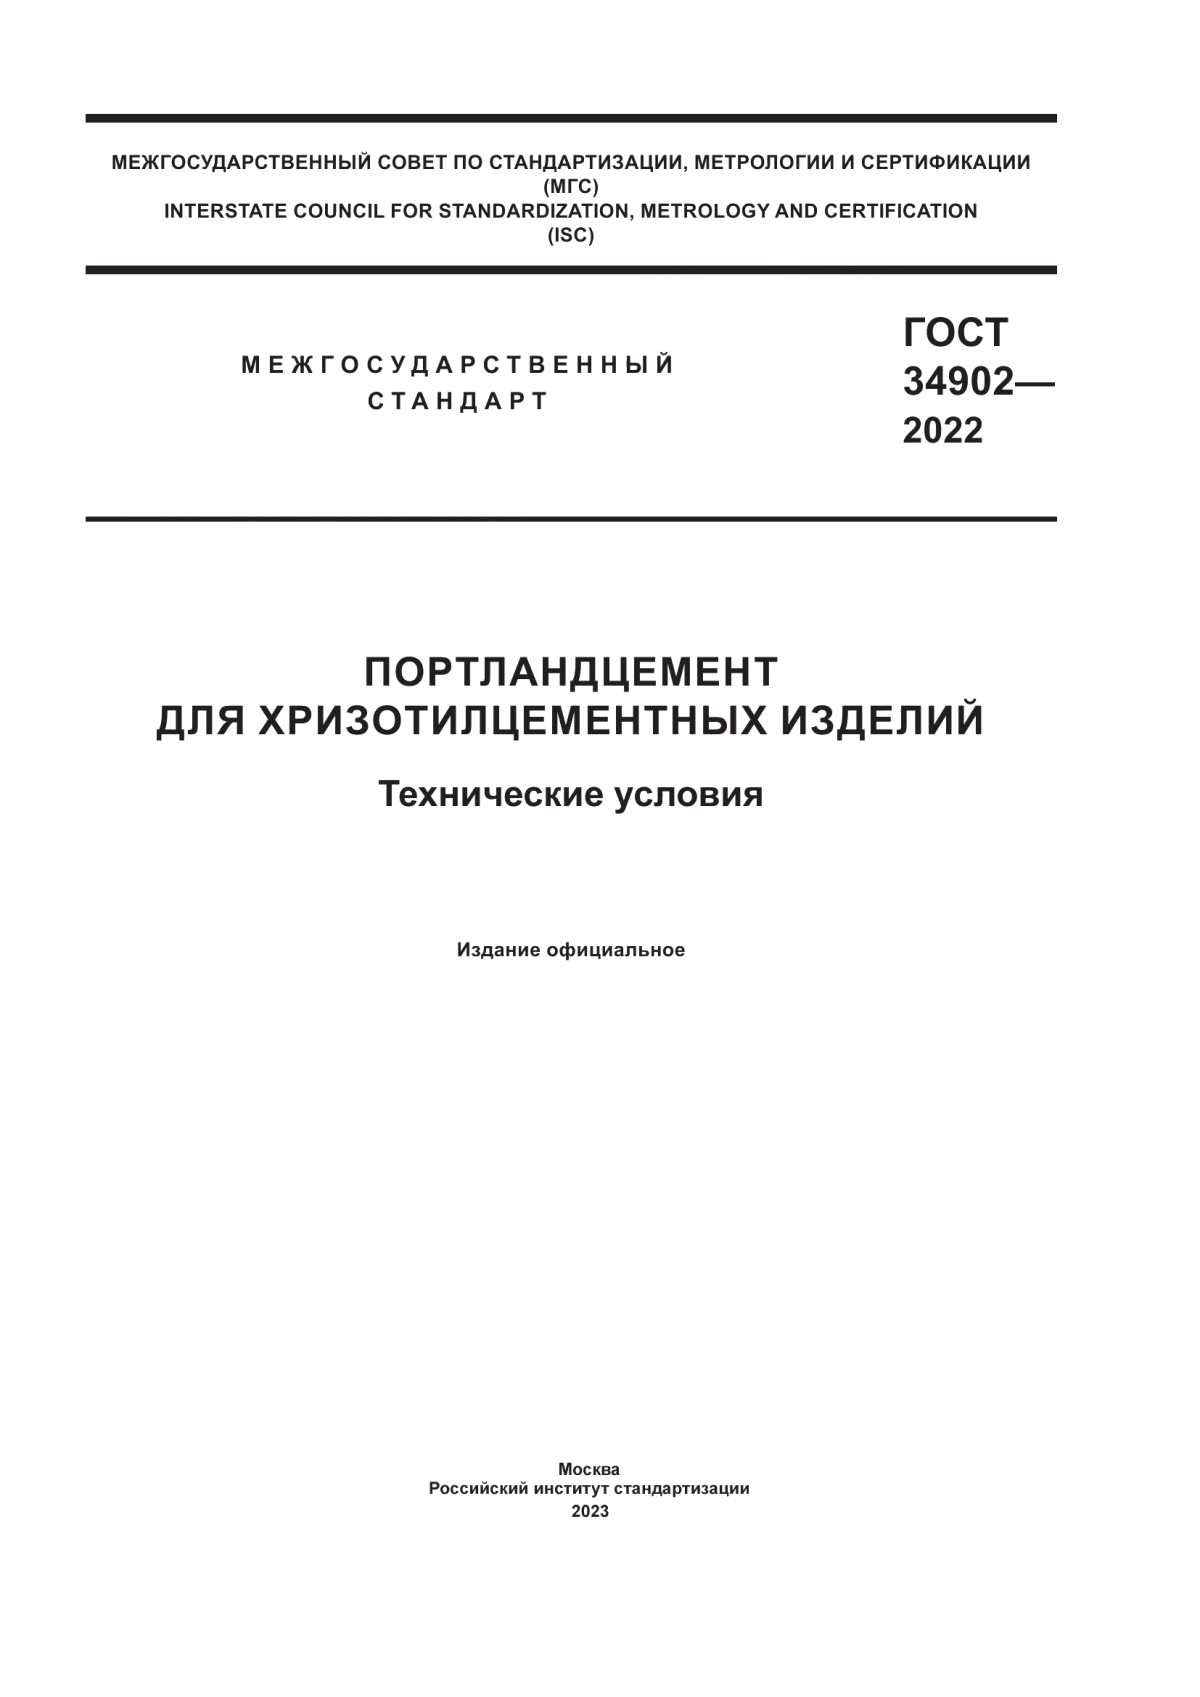 ГОСТ 34902-2022 Портландцемент для хризотилцементных изделий. Технические условия